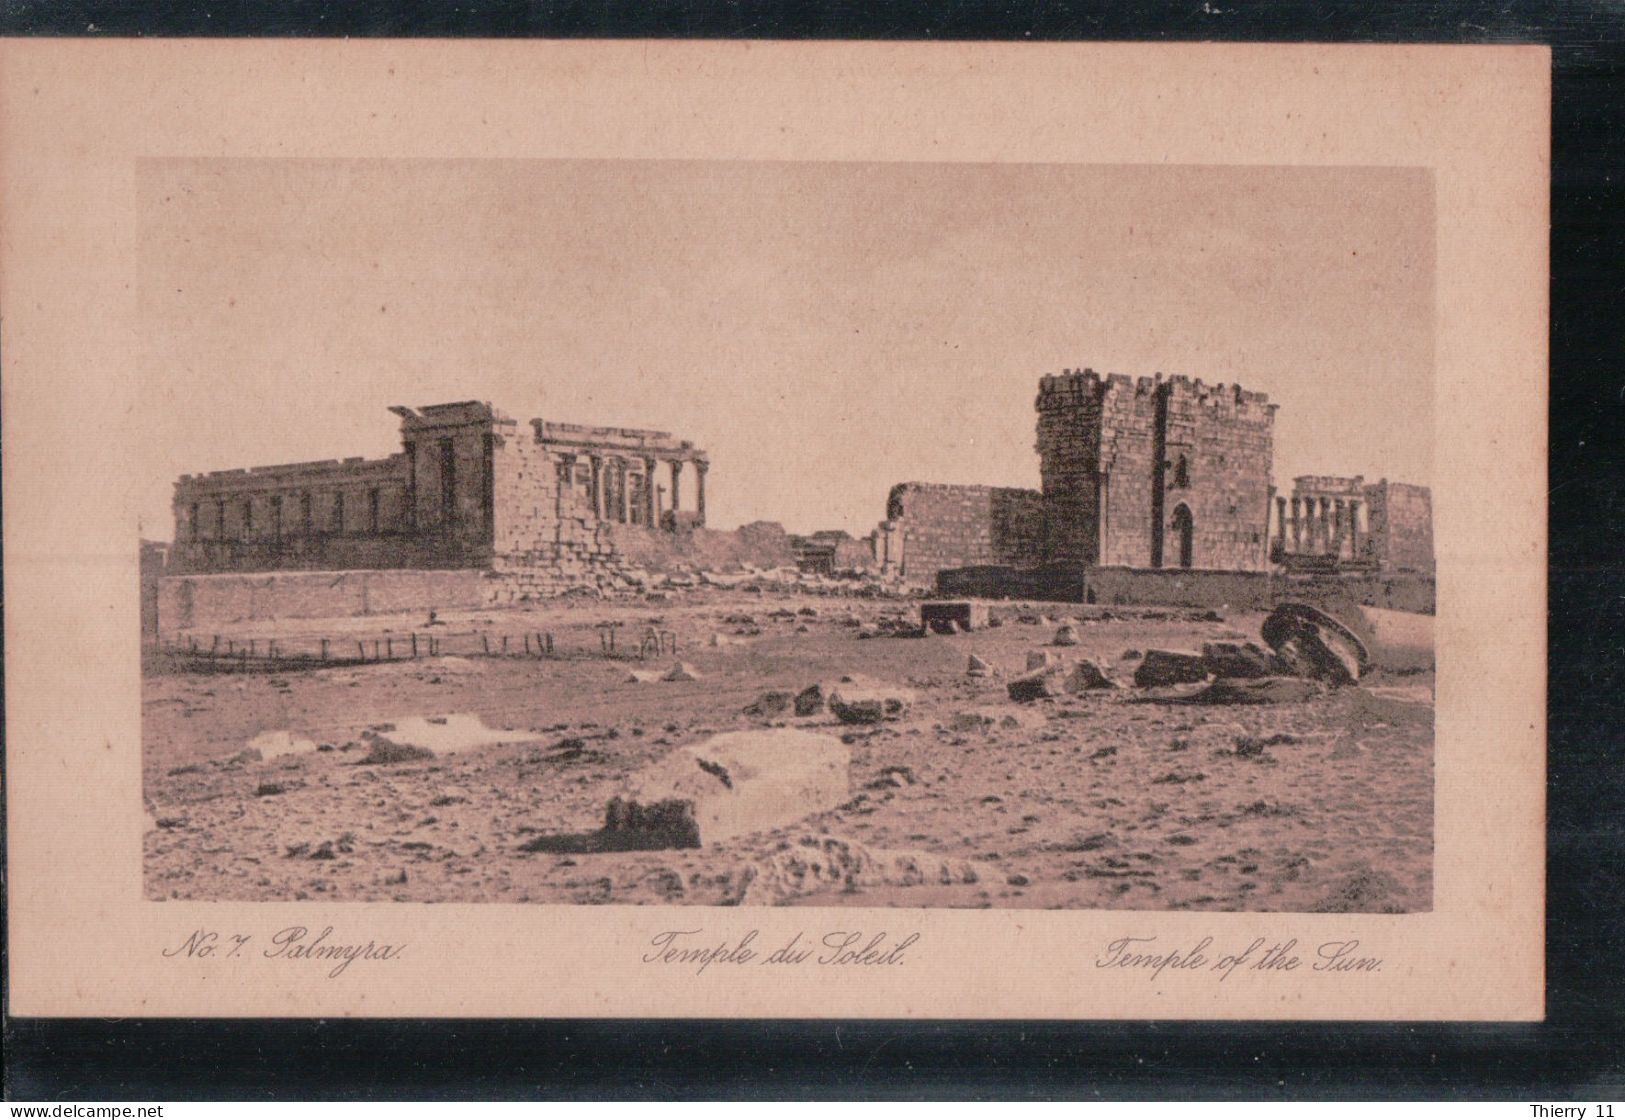 Cpa Palmyra Temple Du Soleil N7 - Syria